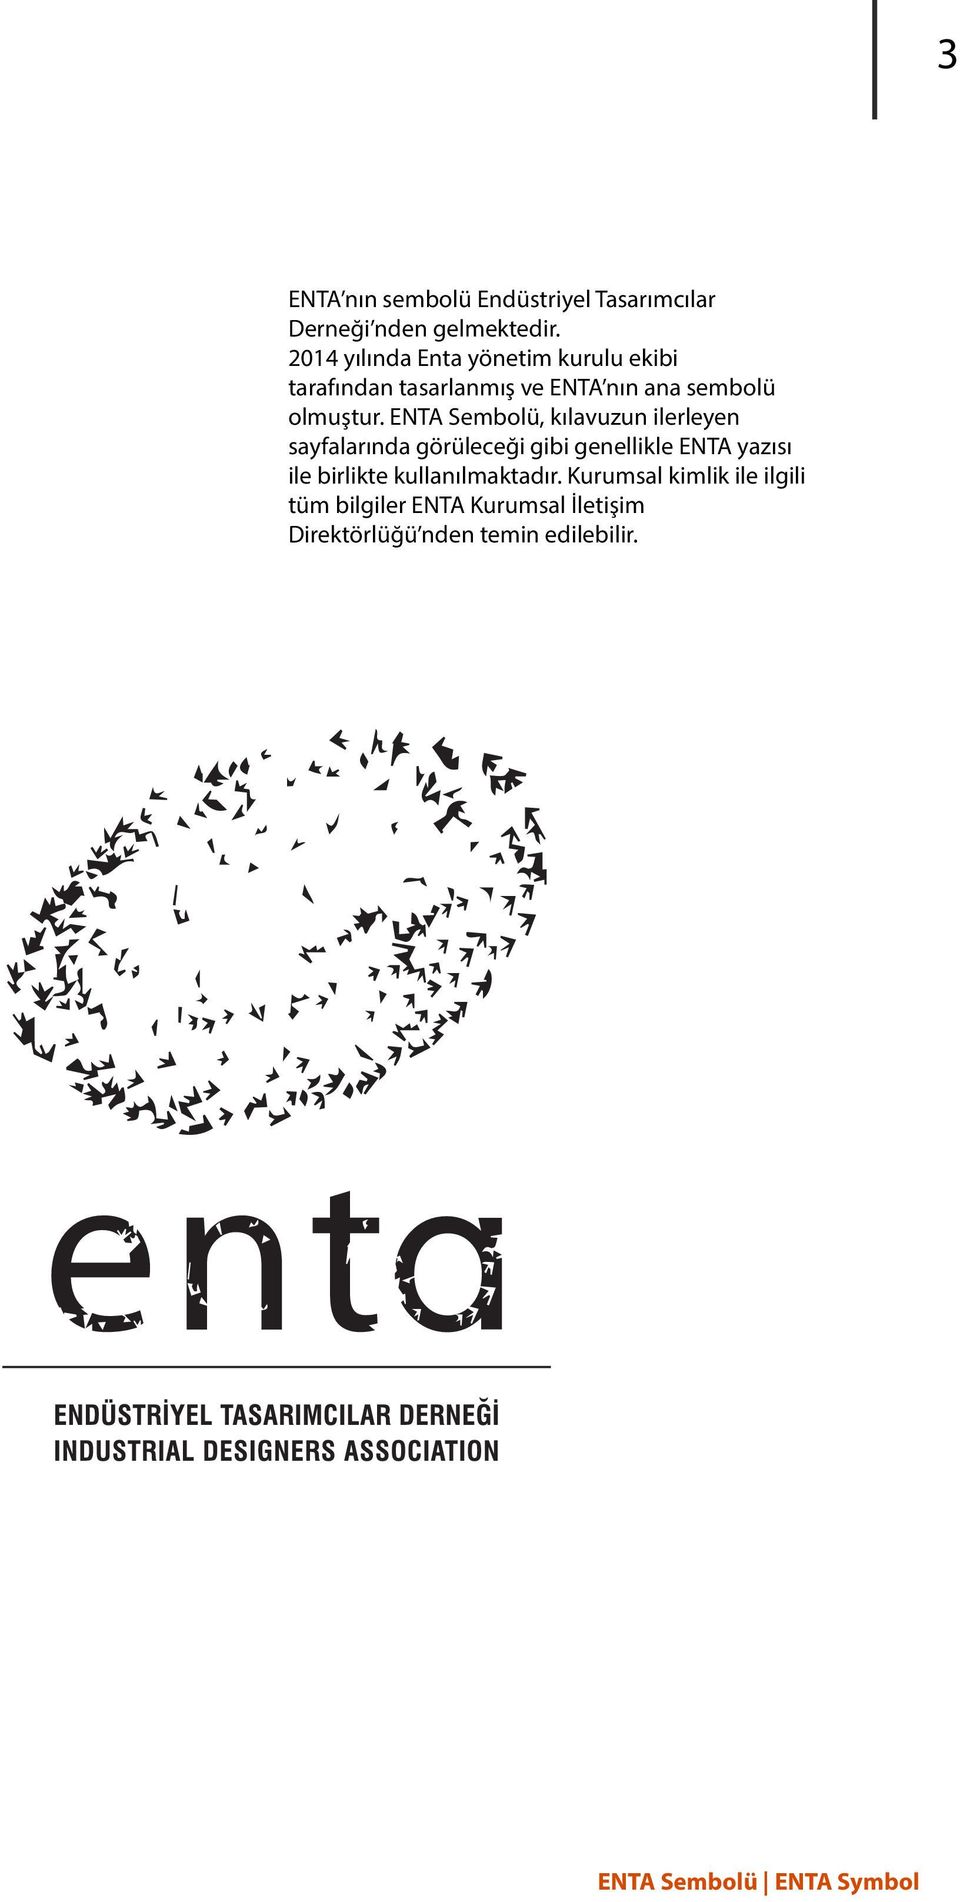 ENTA Sembolü, kılavuzun ilerleyen sayfalarında görüleceği gibi genellikle ENTA yazısı ile birlikte